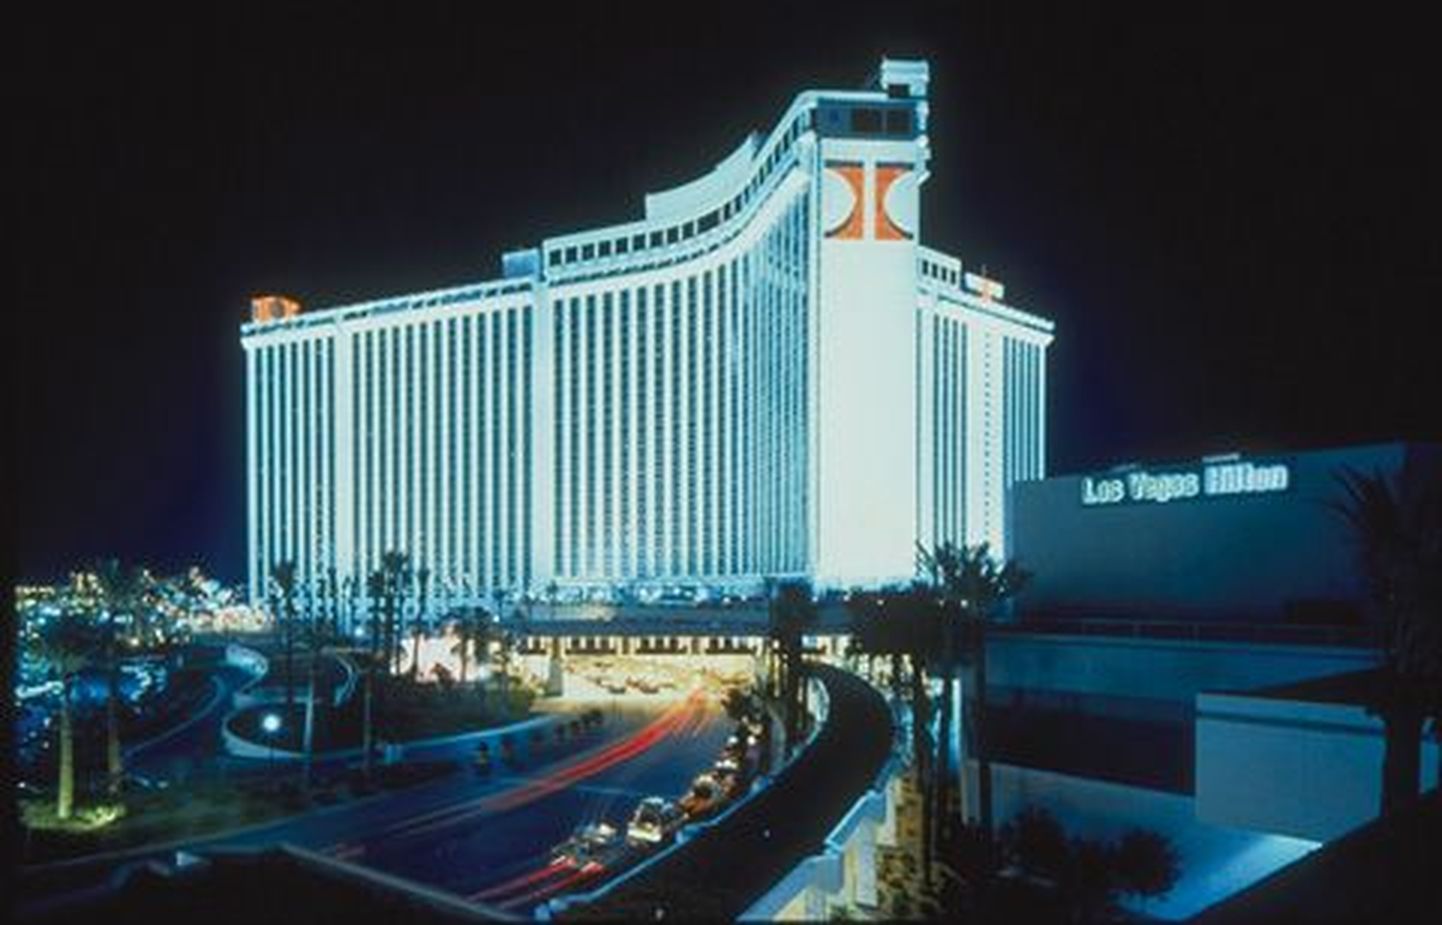 Hiltoni hotell Las Vegases.